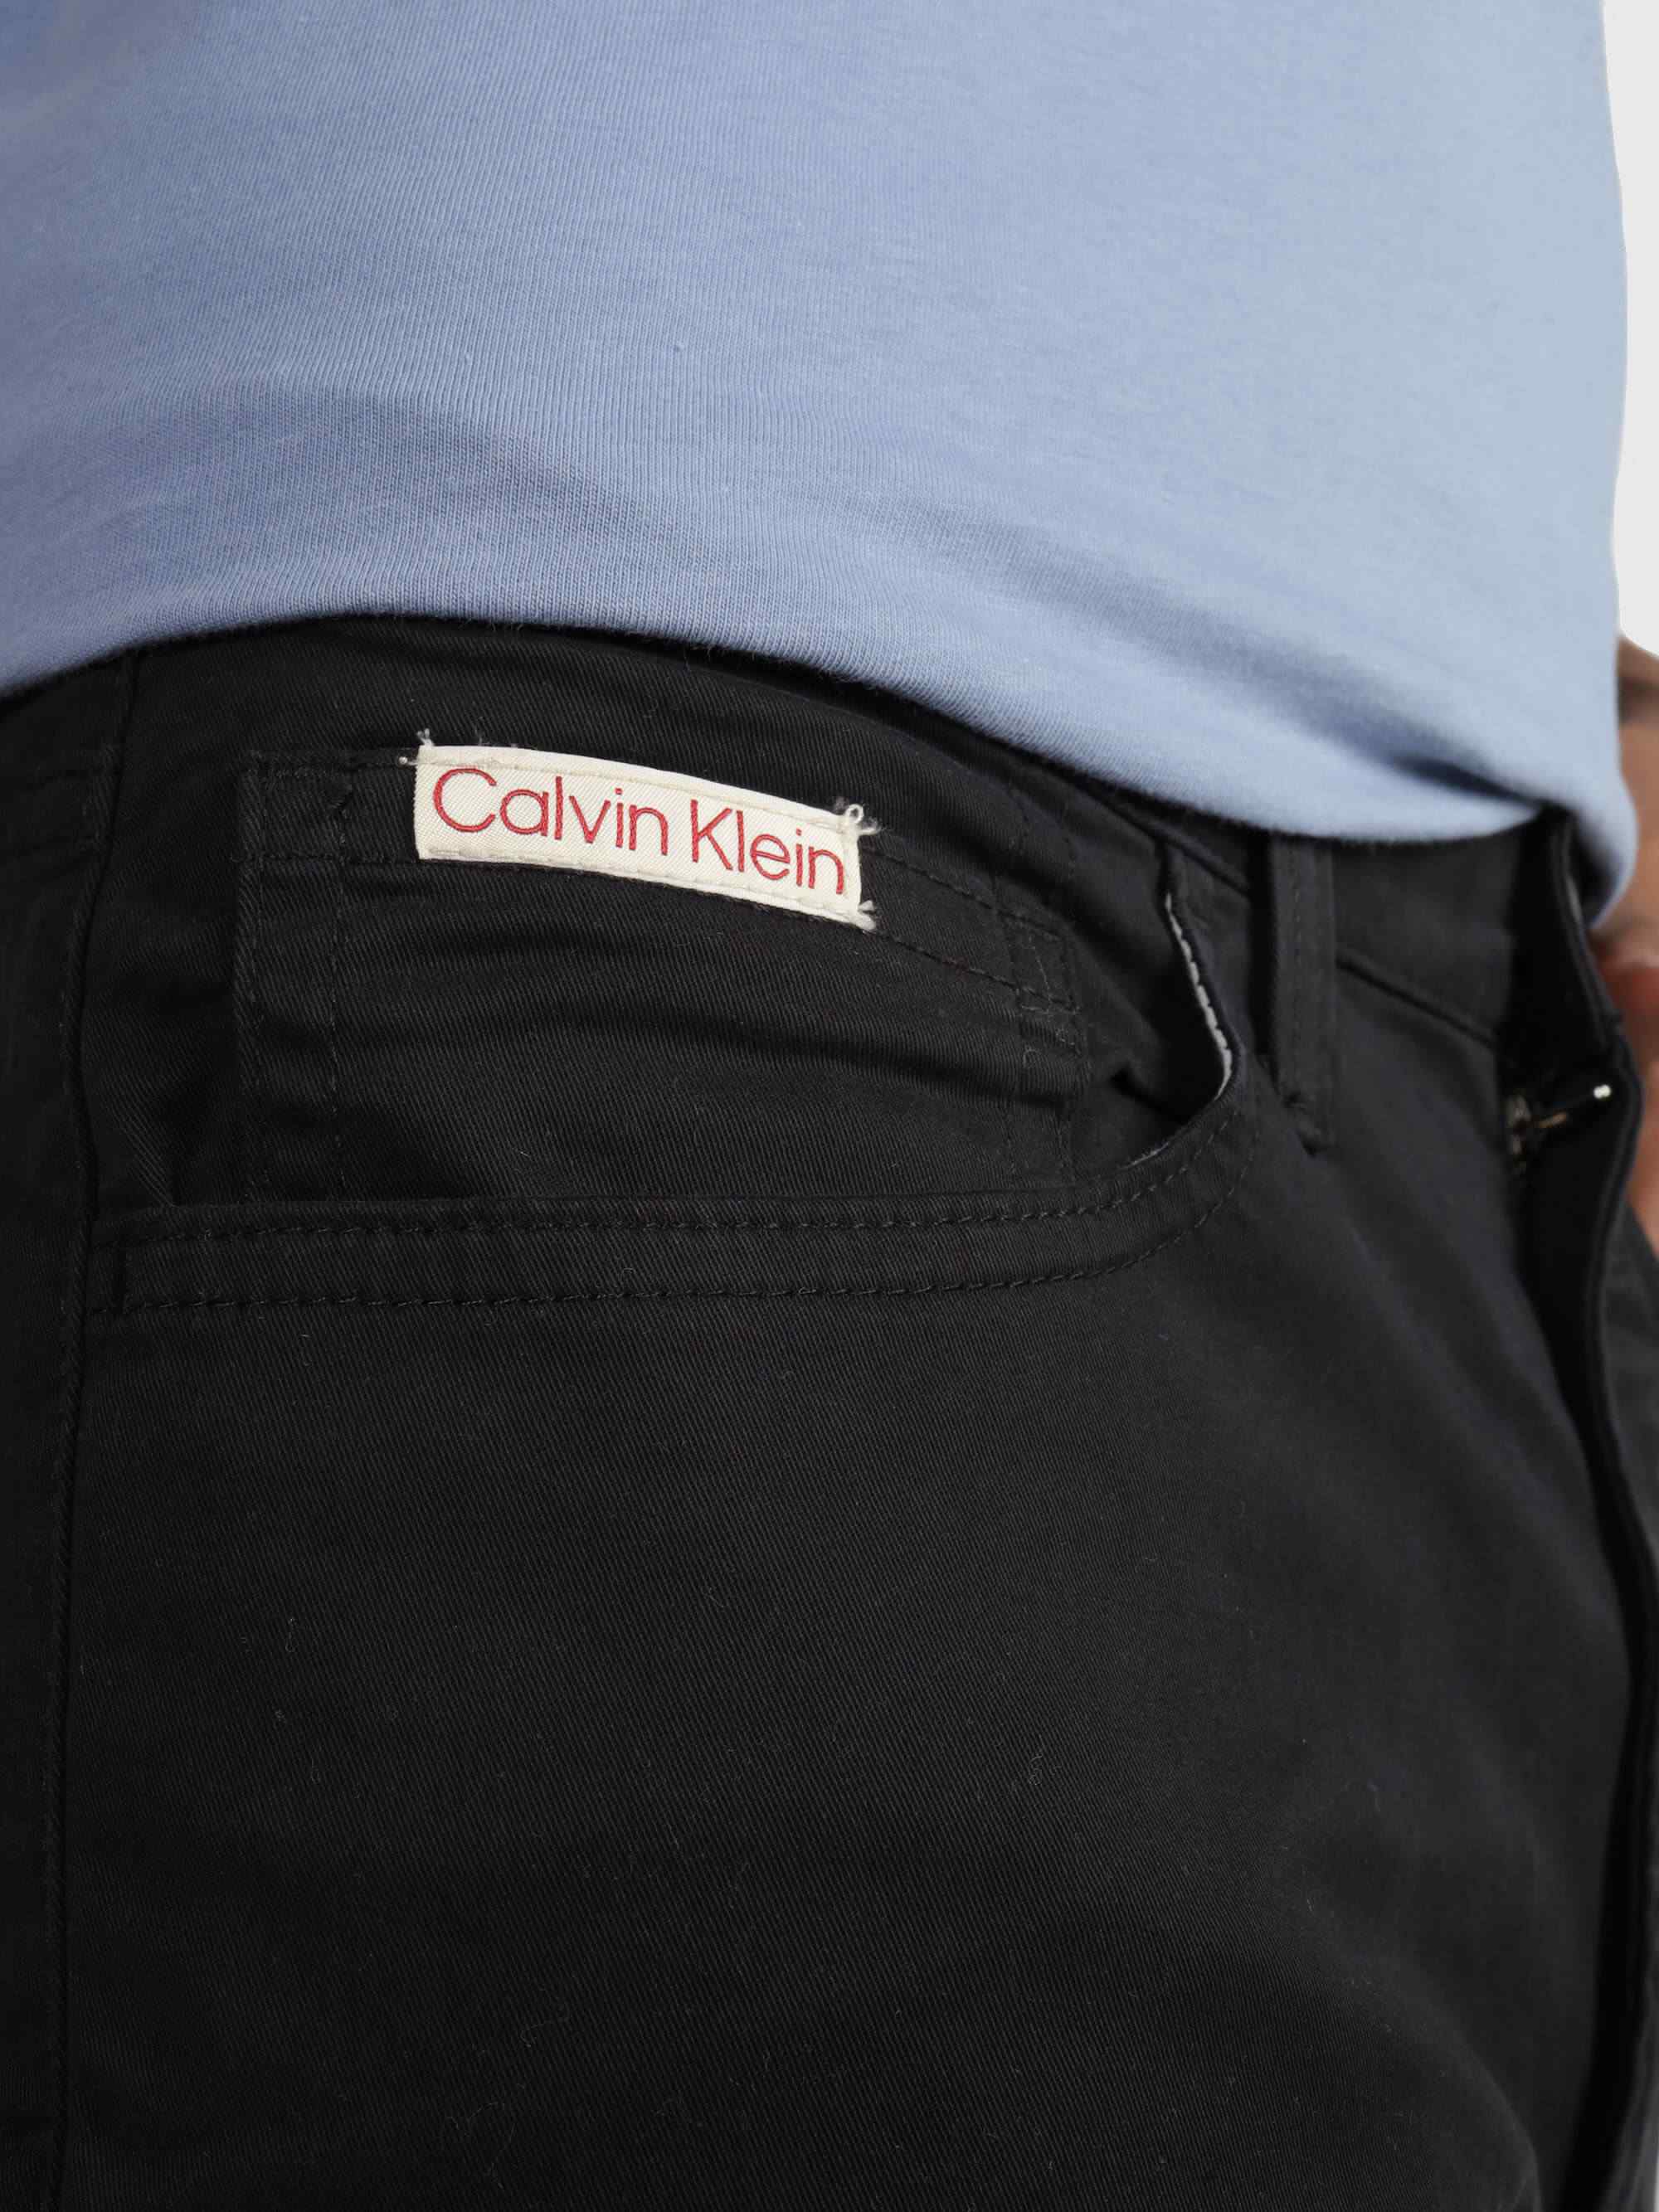 Pantalón Calvin Kelin Hombre Negro